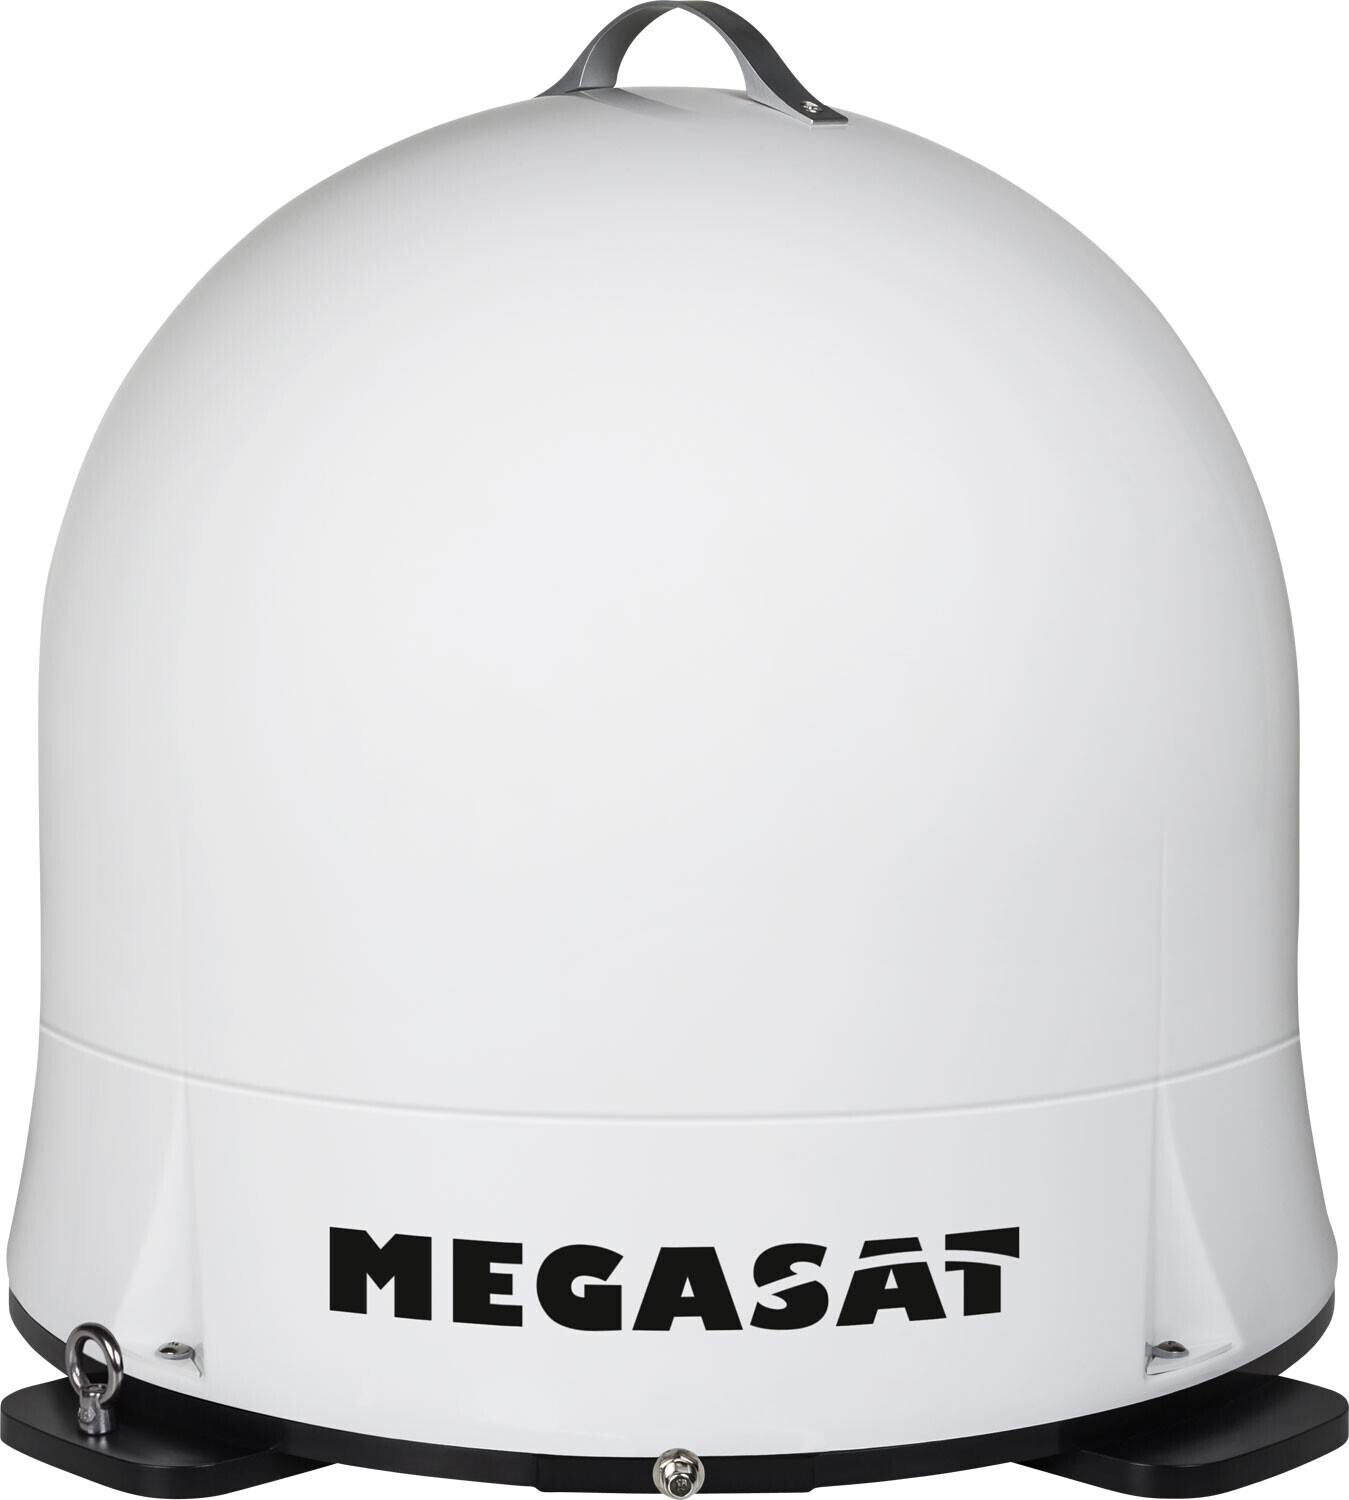 Die transportable, vollautomatische Megasat Satmaster Sat-Anlage